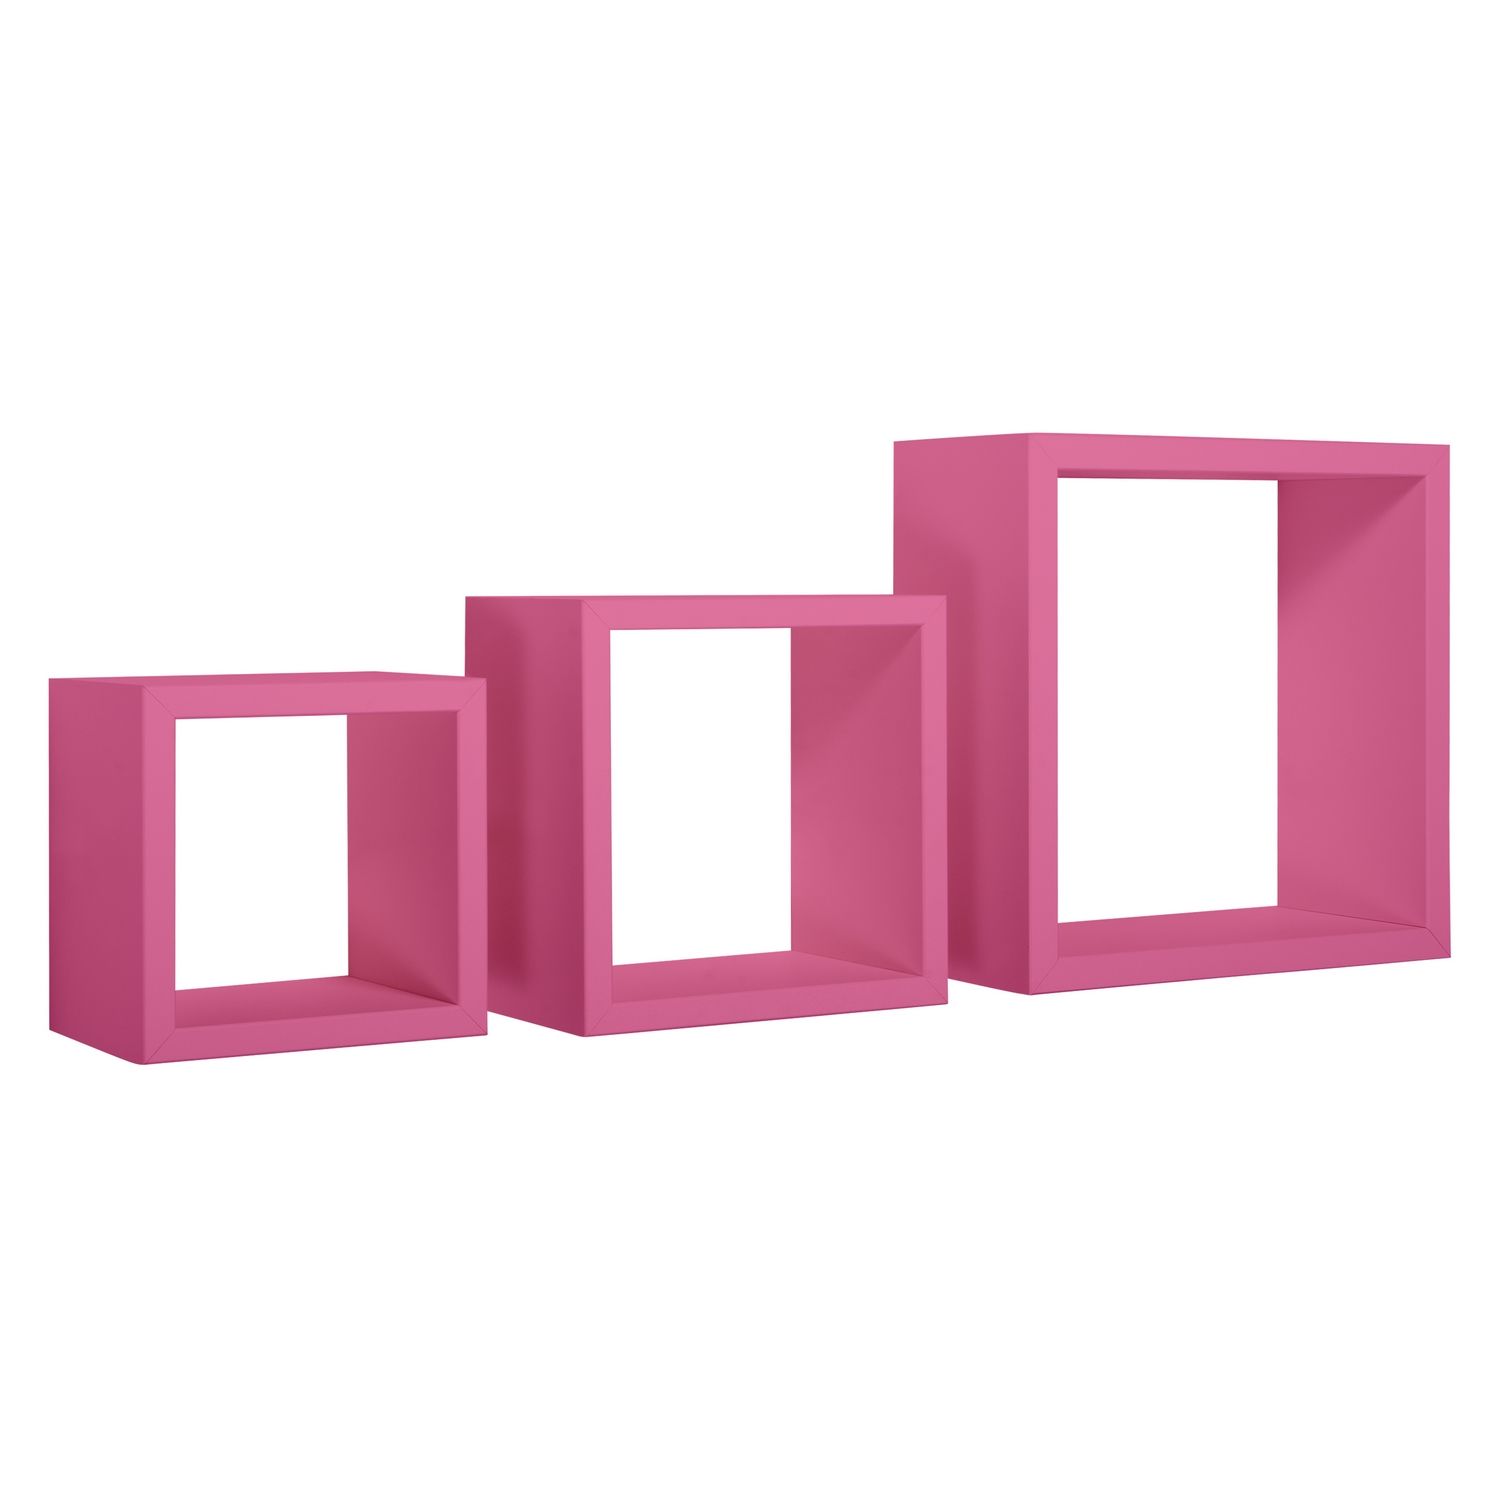 Box Doccia .it - Mensole a cubo da parete set di 3 pz componibile colore  Fucsia mod. Rubic